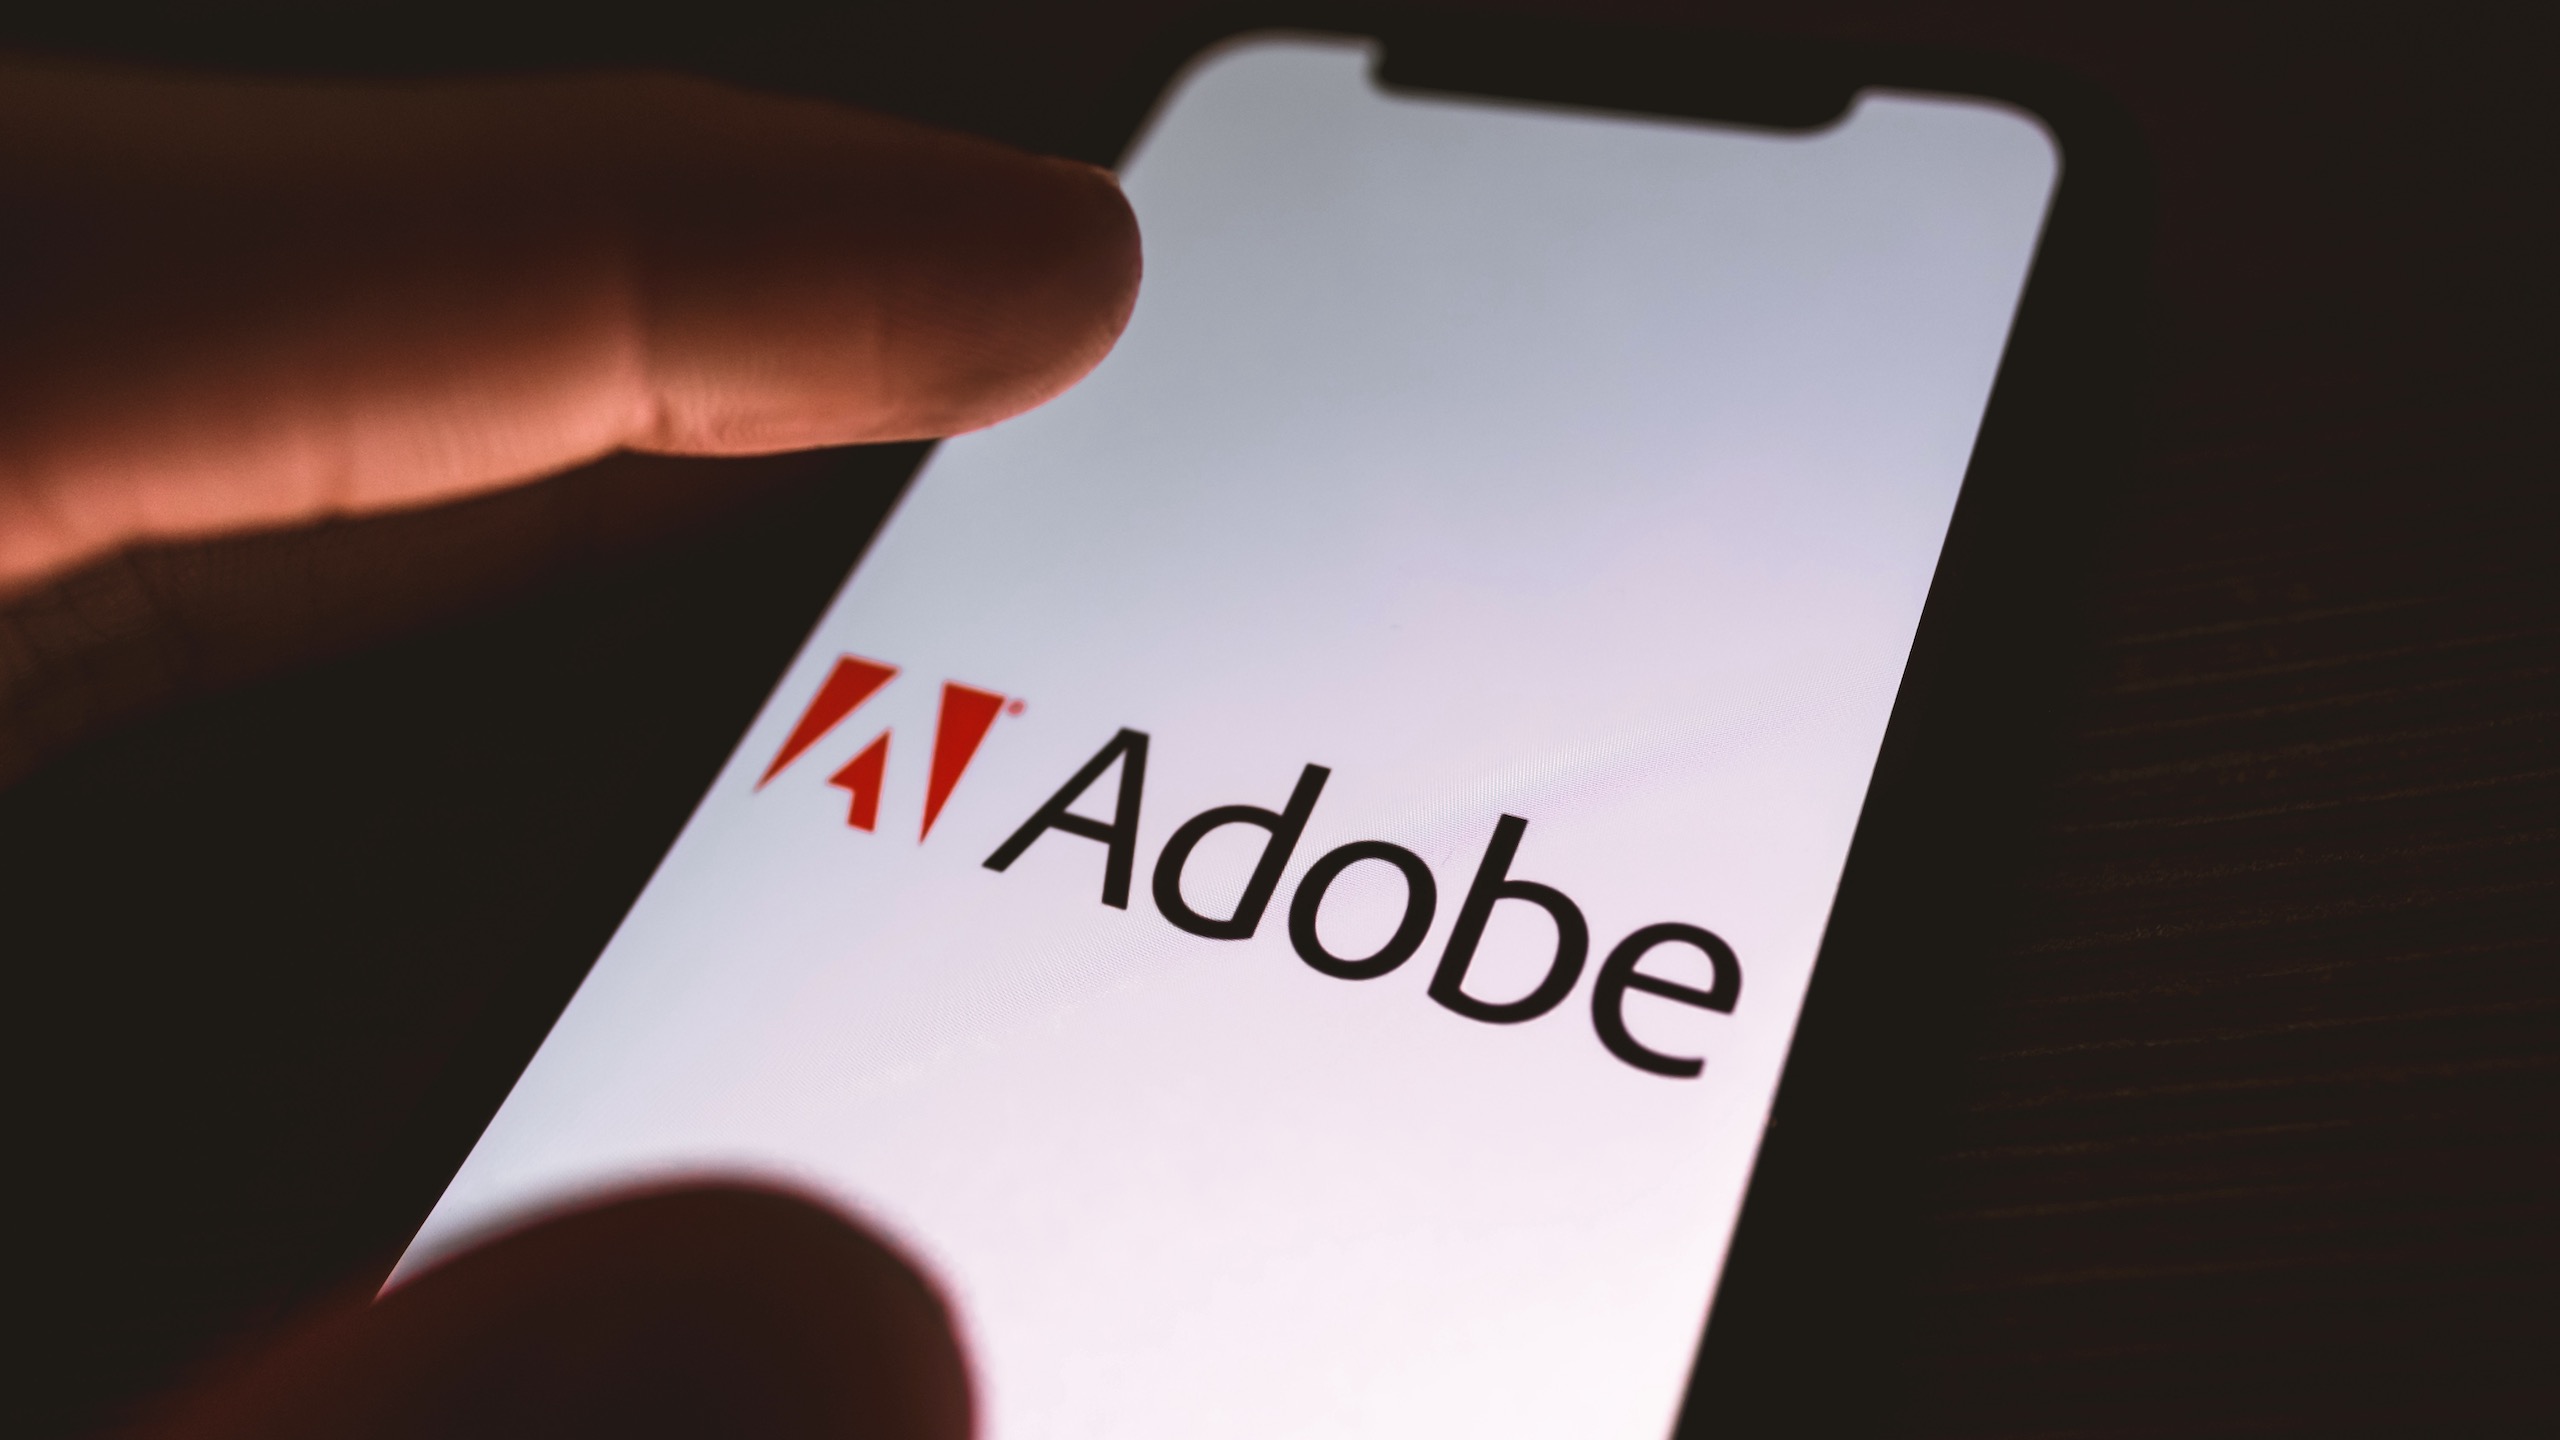 Adobe voegt GenAI toe aan Photoshop met Firefly-mogelijkheden